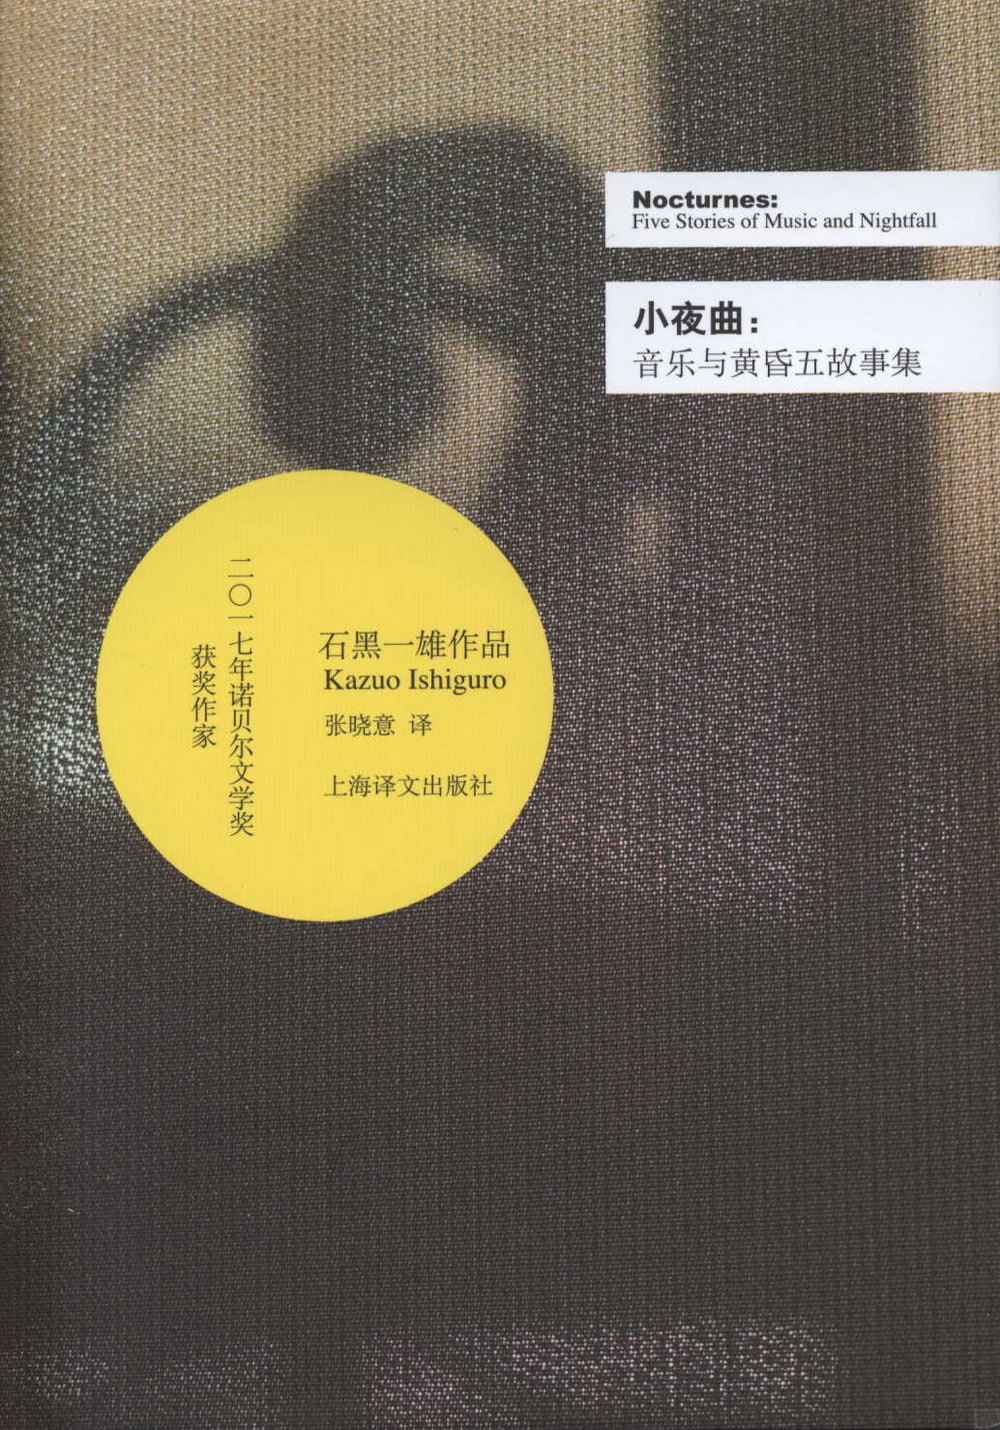 石黑一雄（Kazuo Ishiguro）文集 : 小夜曲（音樂與黃昏五故事集）